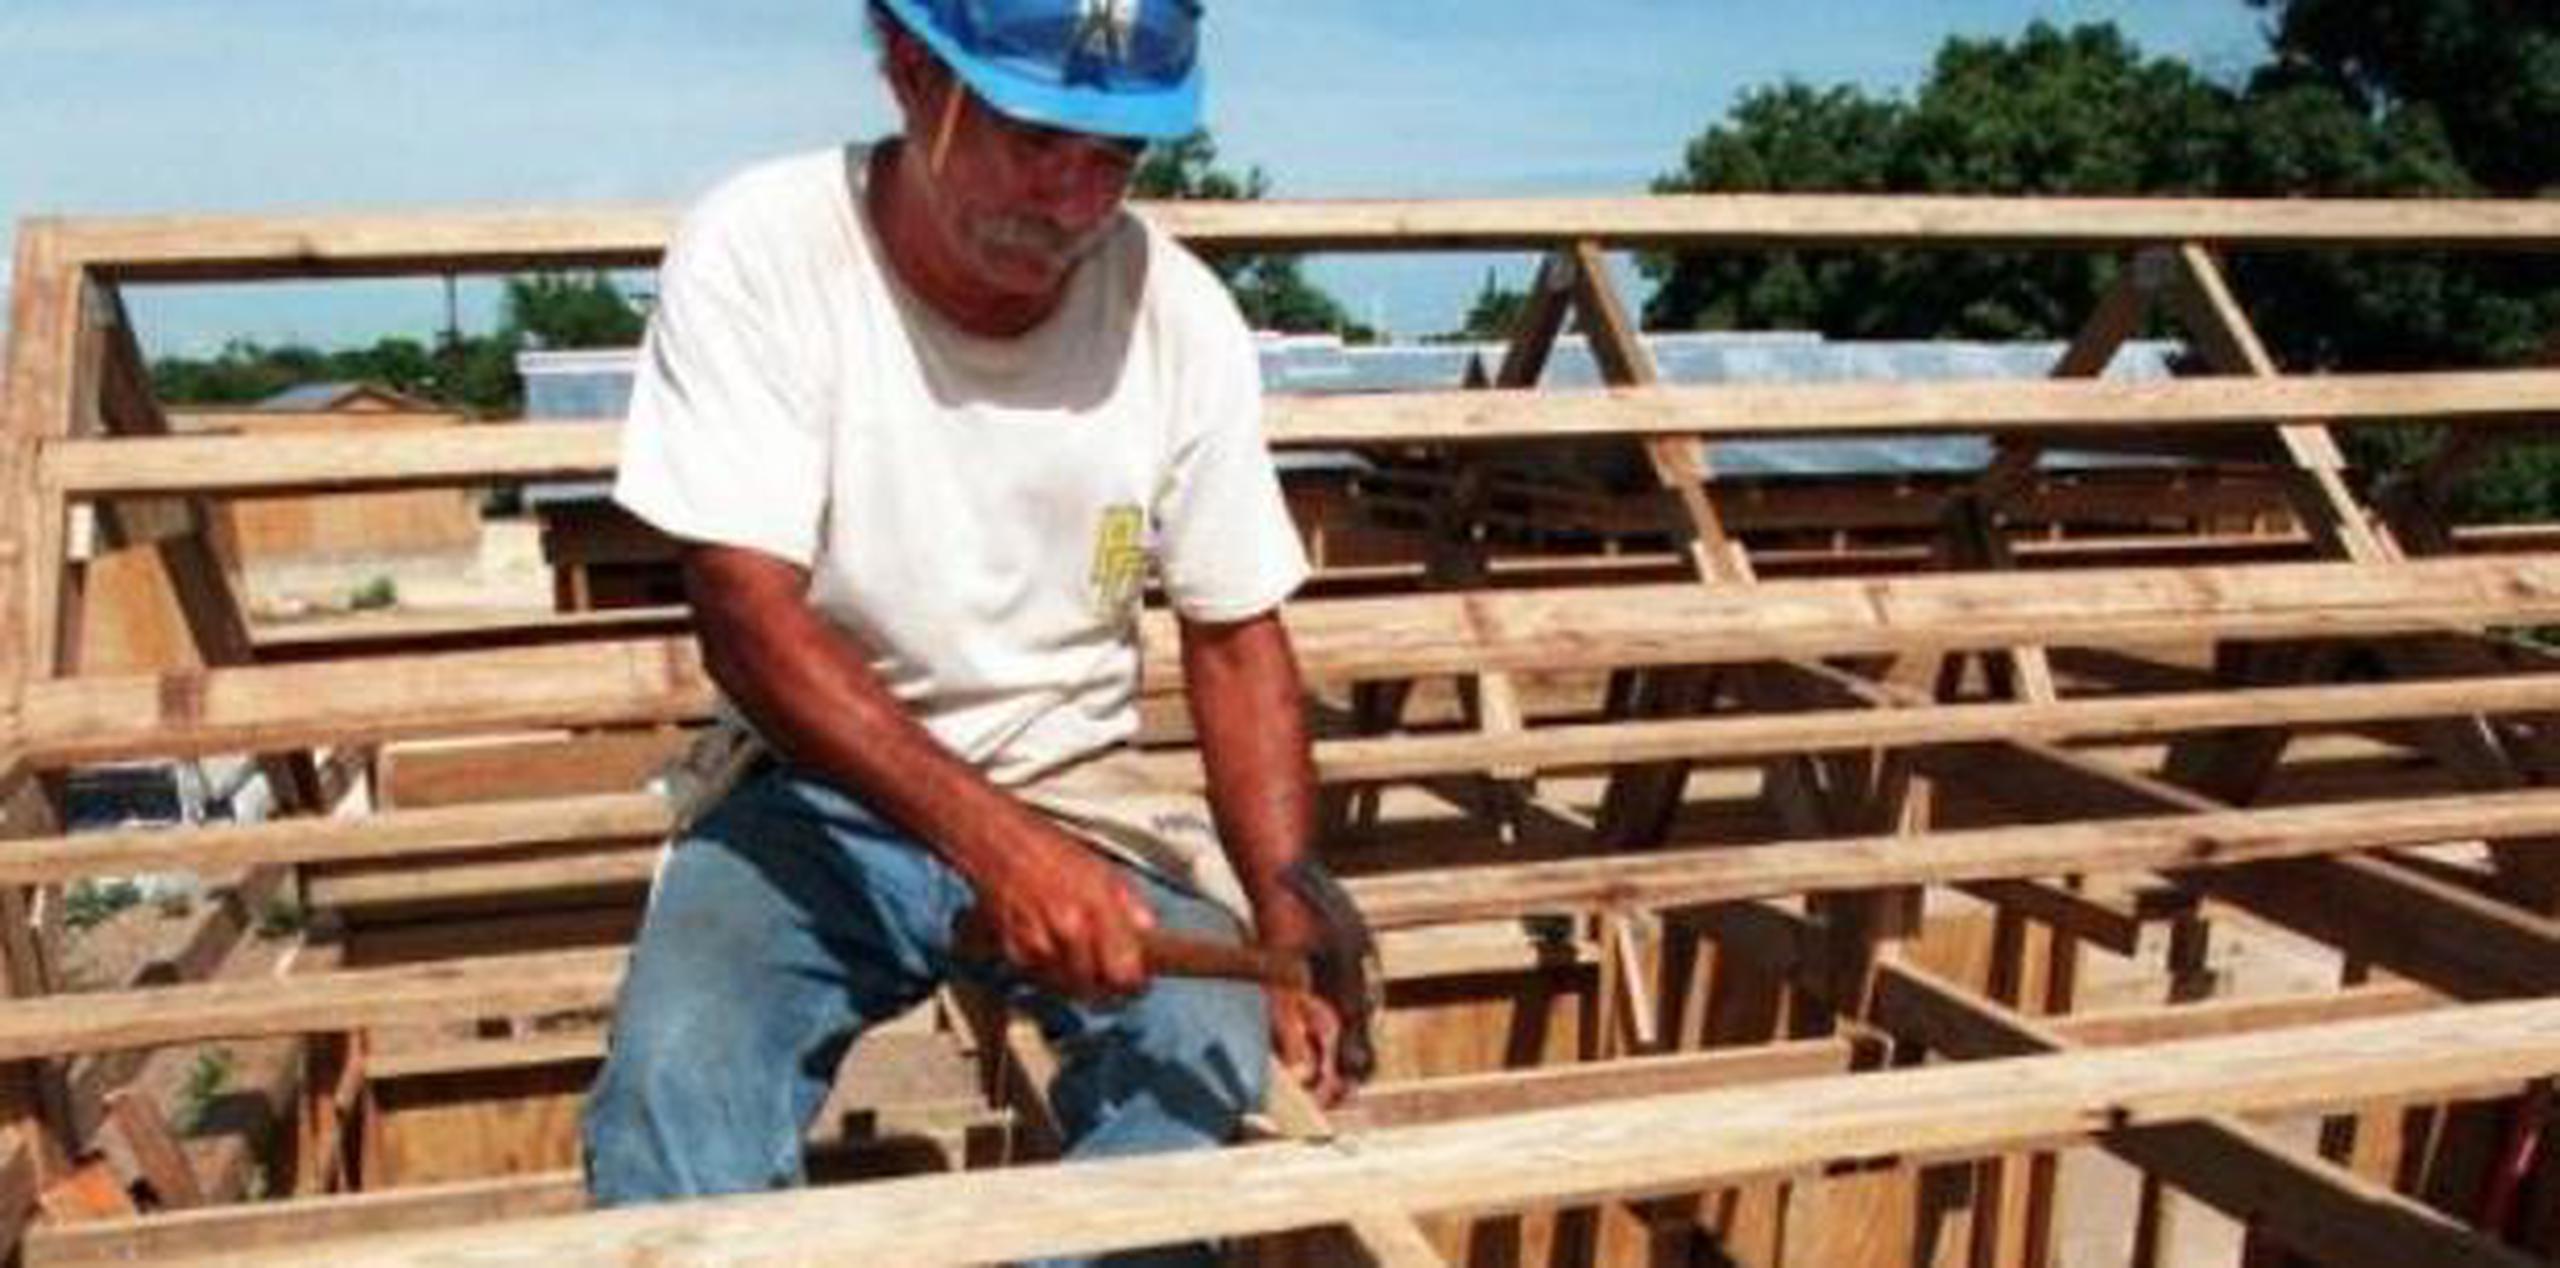 Estudios de la ACPR demuestran que el 55 por ciento de las viviendas construidas en Puerto Rico se han realizado "informalmente". (Archivo)